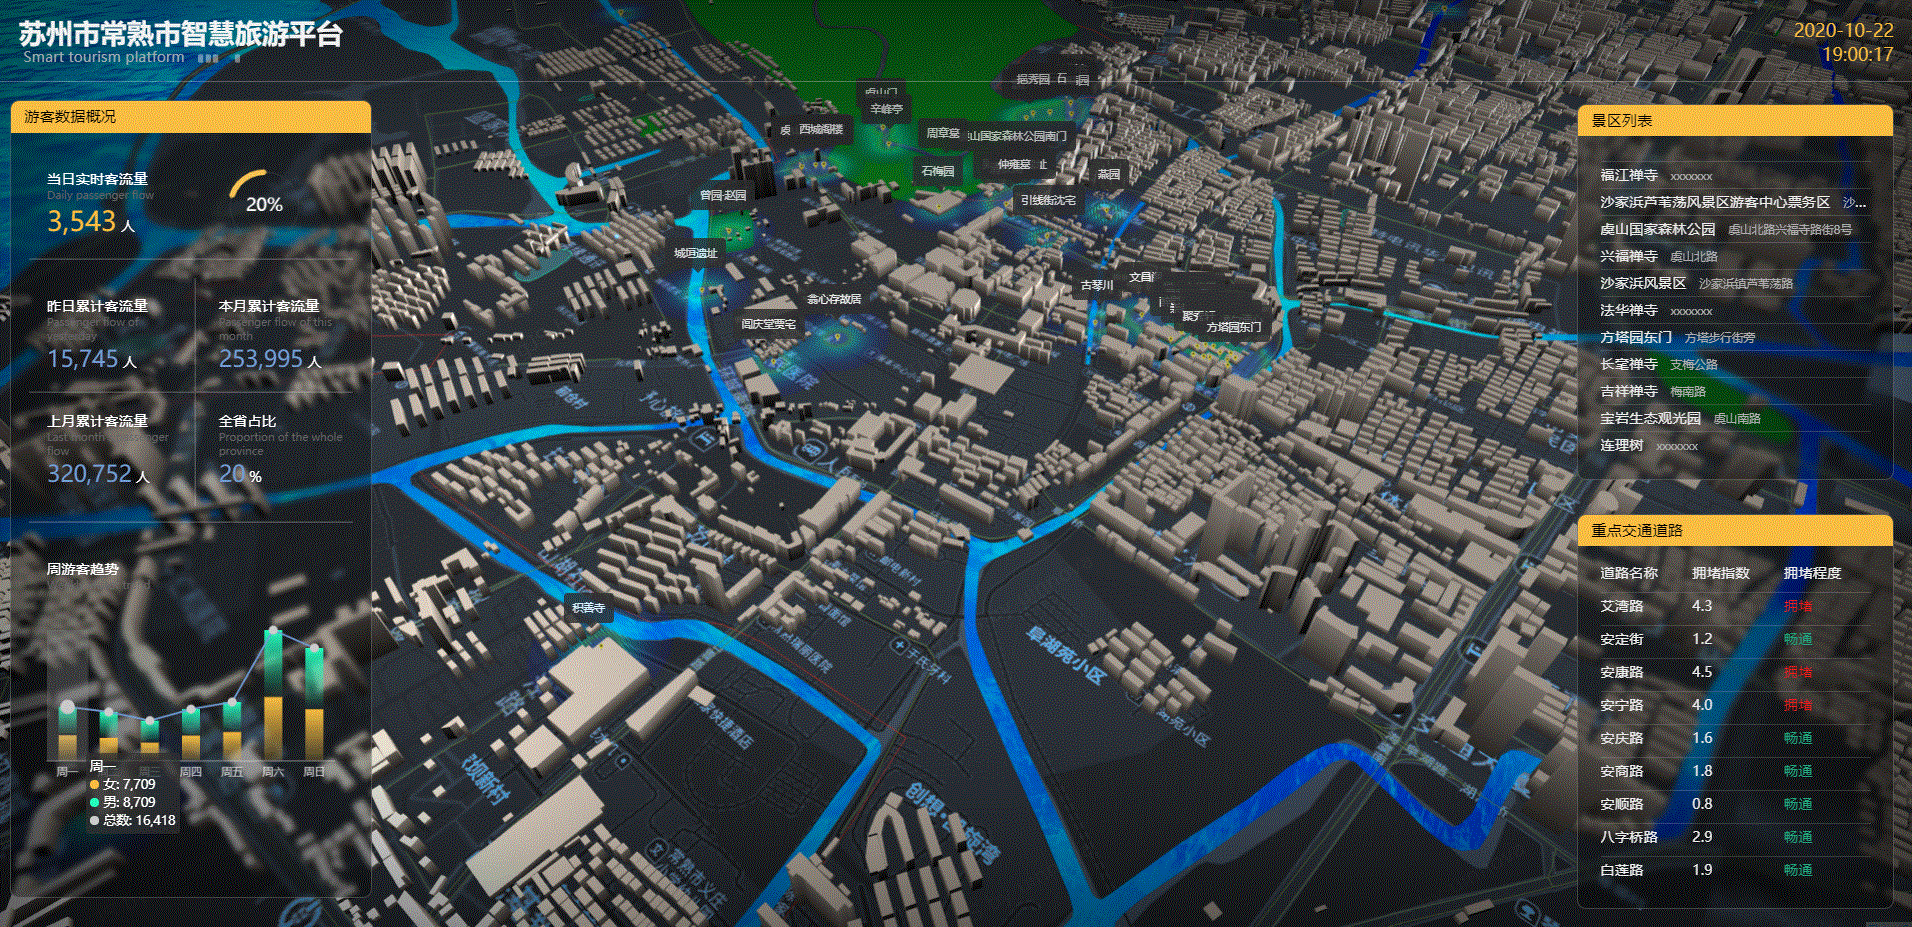 我的城市三维模型之技术实现,一文概括 !3d 地图  js